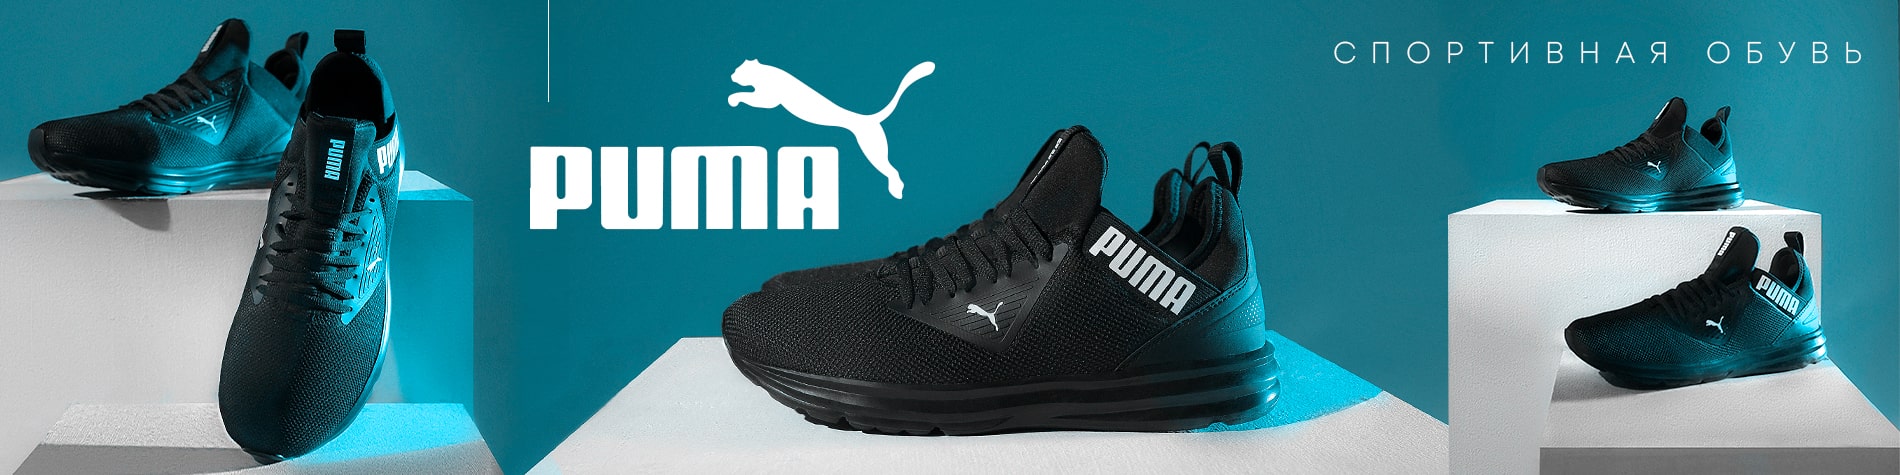 Puma спортивная брендовая обувь - купить в Belwest